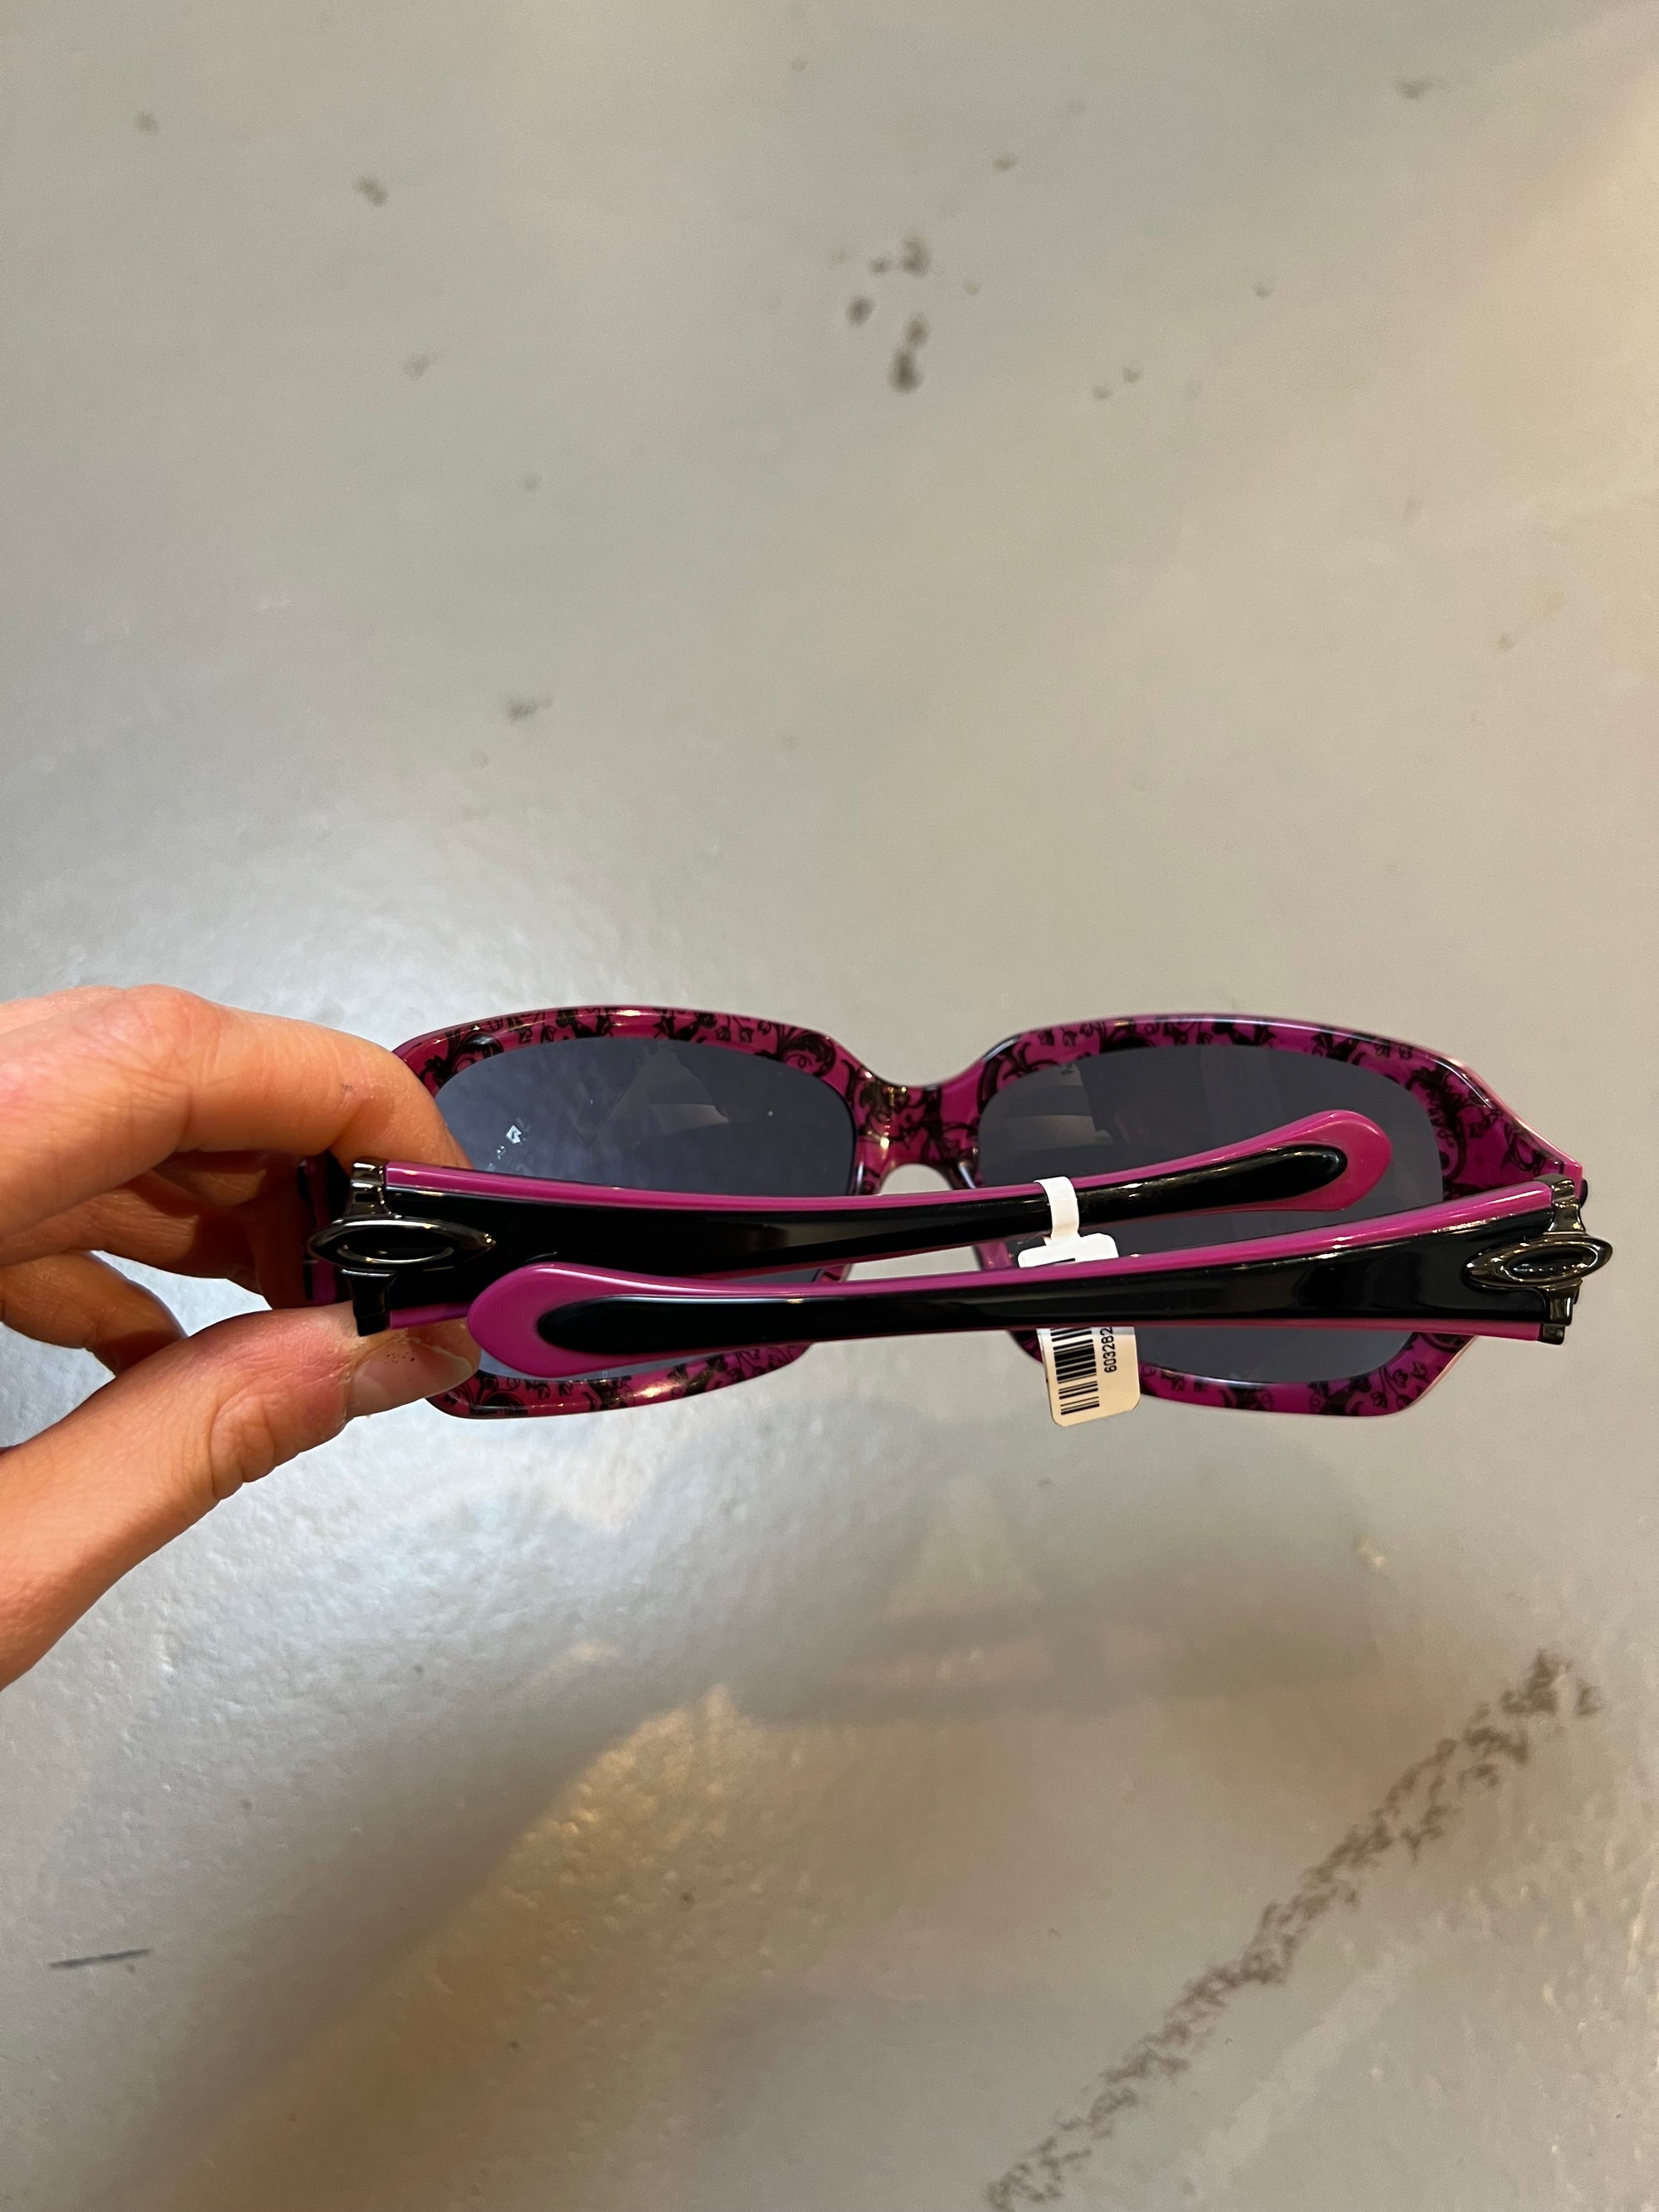 Produkt bild der Oakley Sunglasses Black Pink von den Bügeln